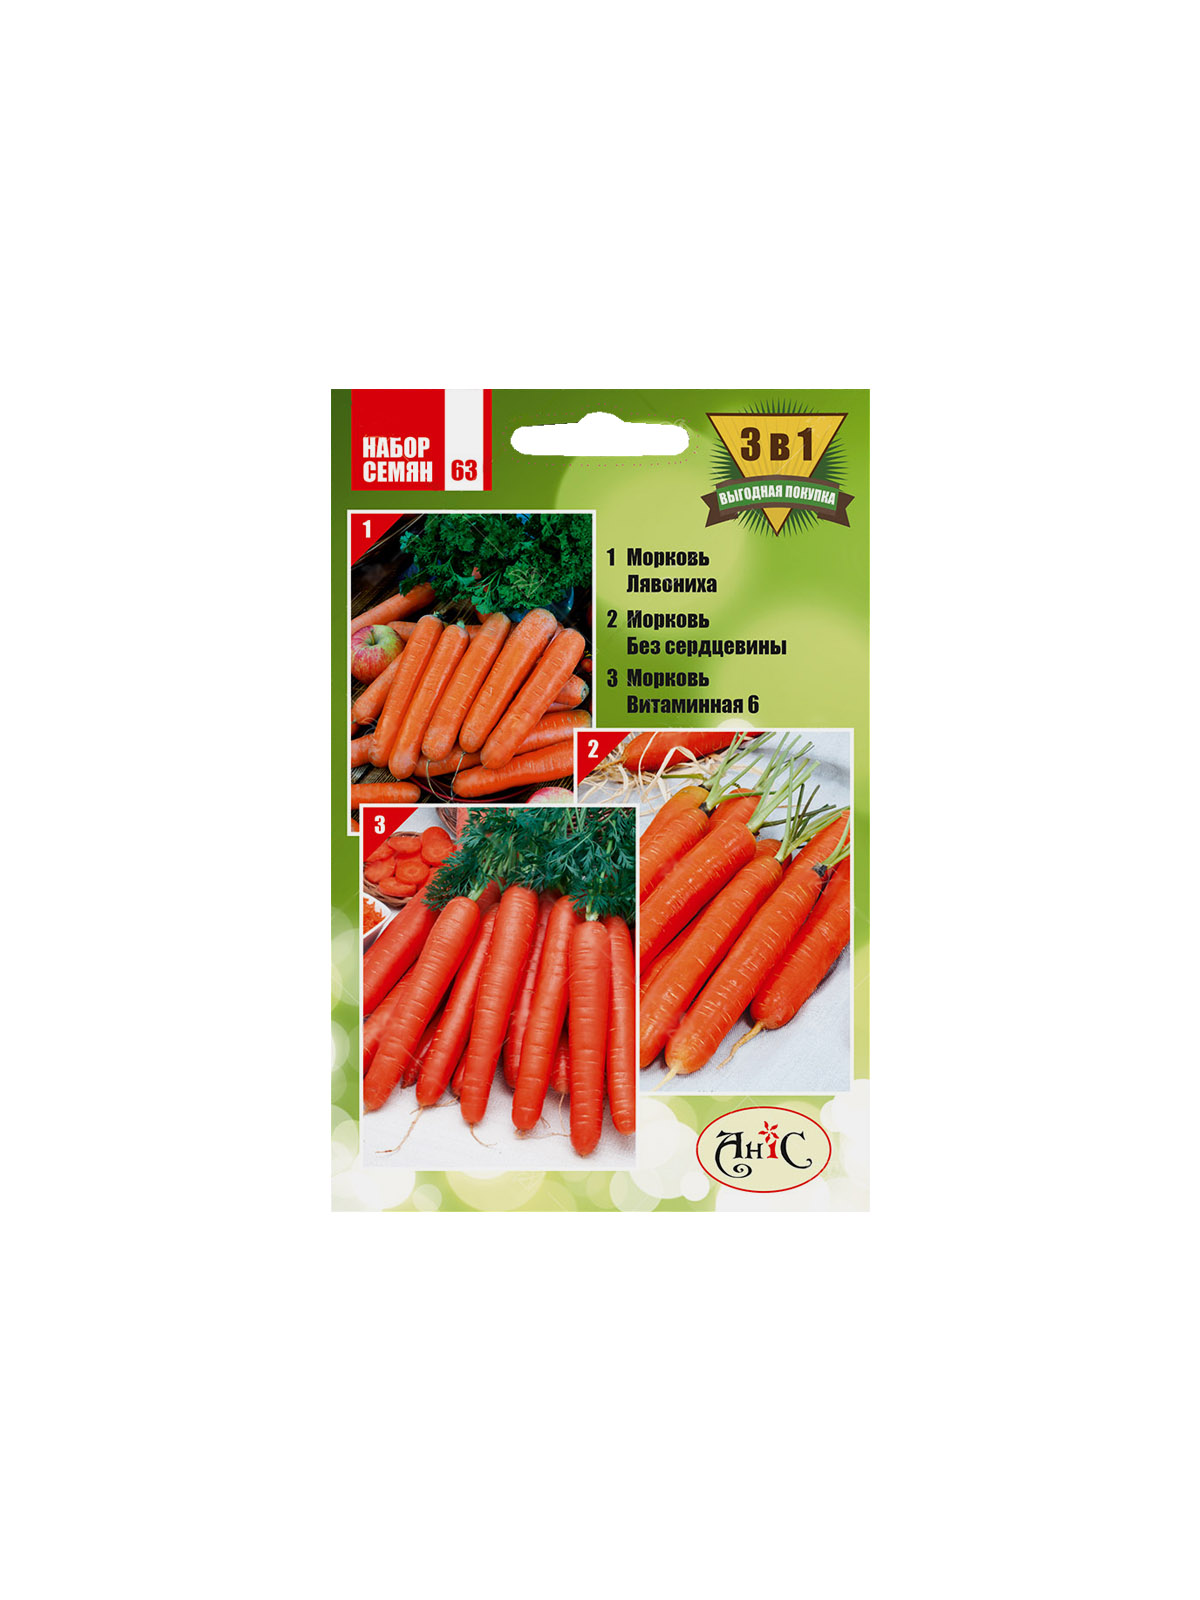 Набор семян № 63 Морковь Лакомка, Морковь без сердцевины, Морковь Витаминная